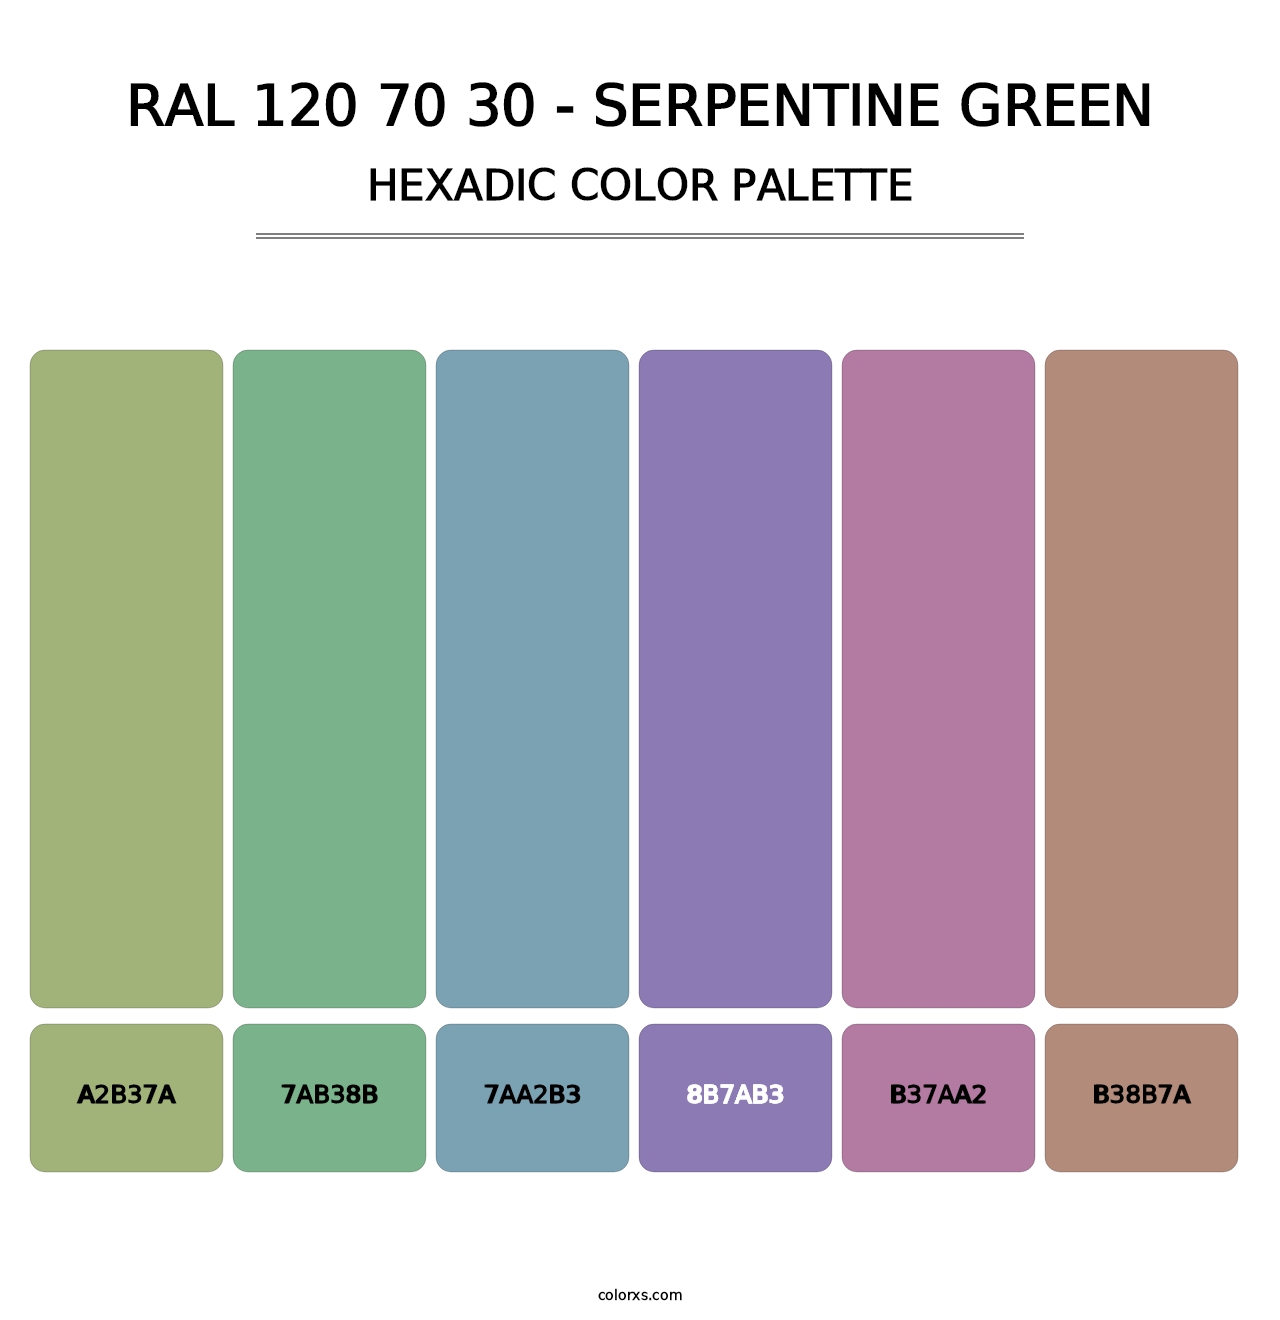 RAL 120 70 30 - Serpentine Green - Hexadic Color Palette